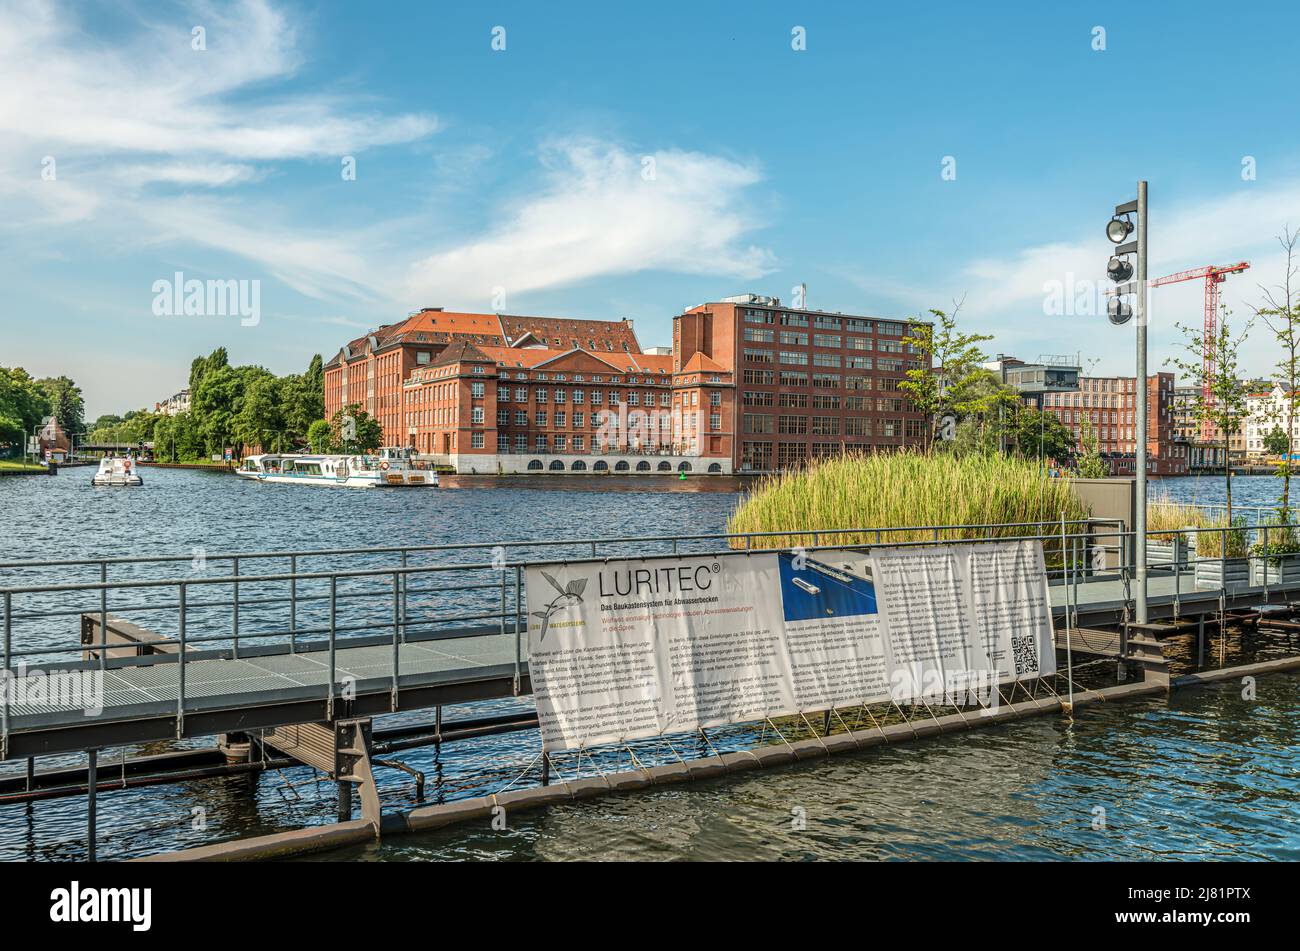 Planta piloto de LURITEC de un nuevo sistema de cuencas de desbordamiento de aguas pluviales en el río Spree, Berlín, Alemania Foto de stock